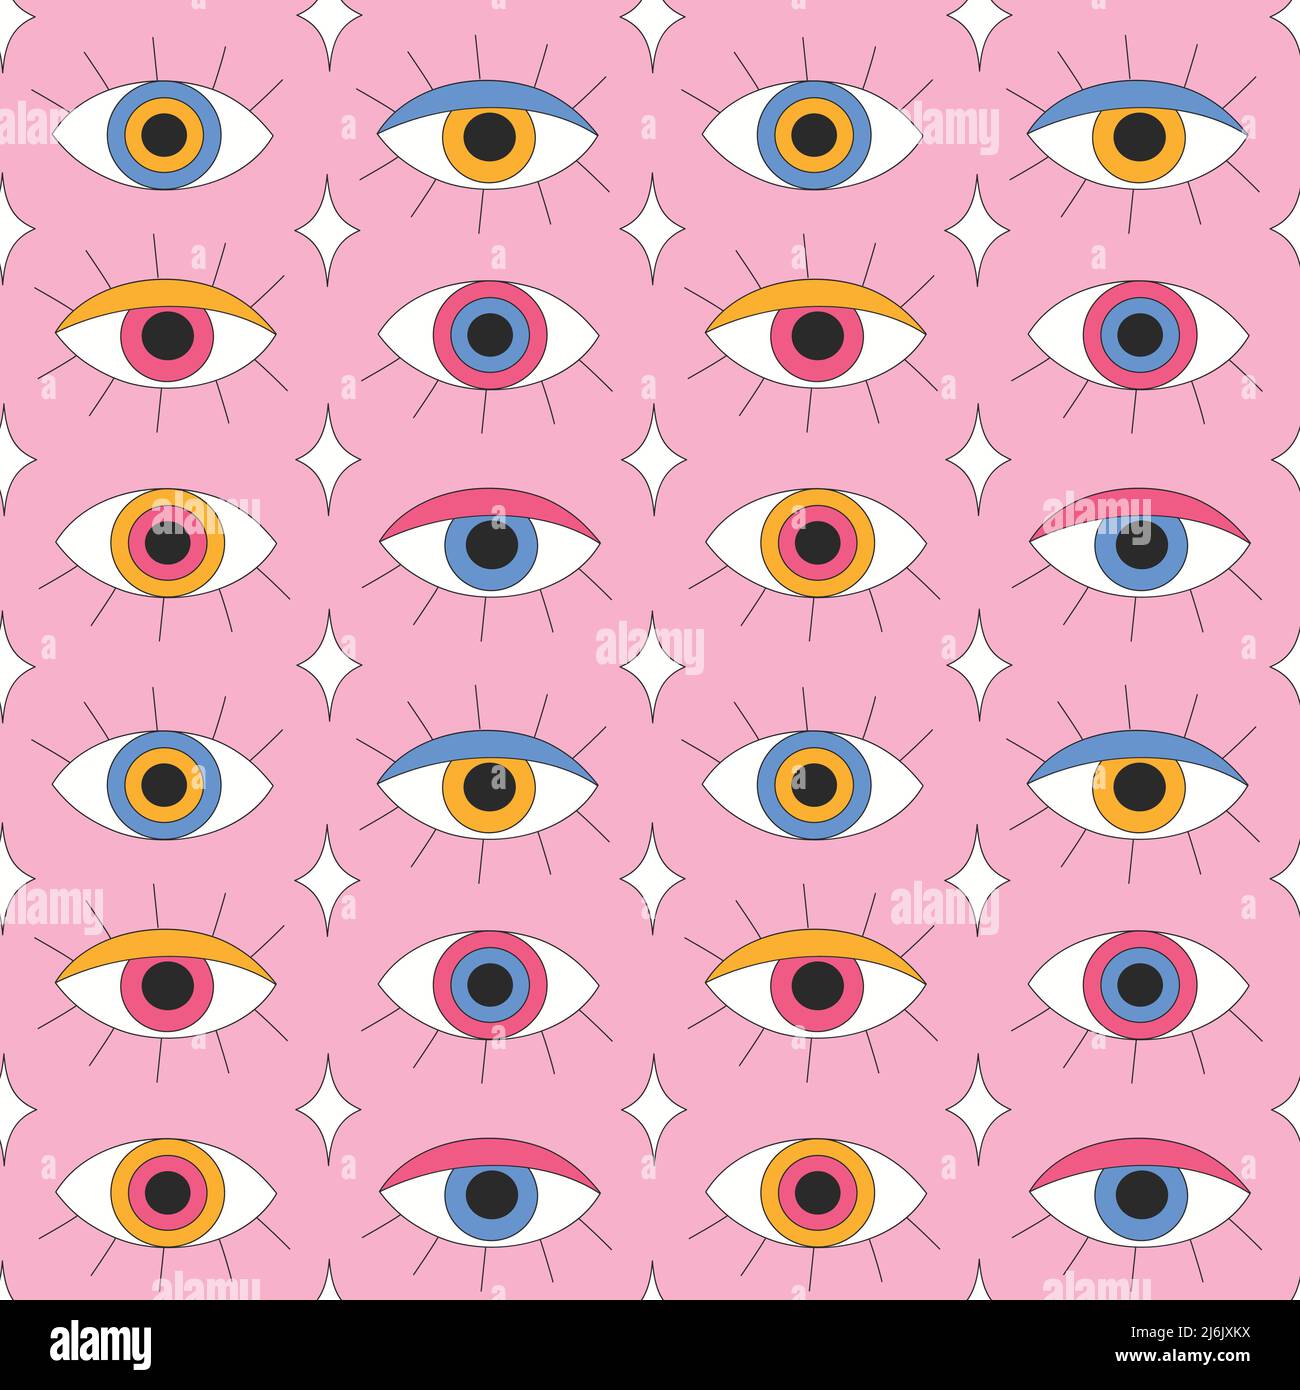 Retro eyes with eyelashes on pink background. Stock Vector